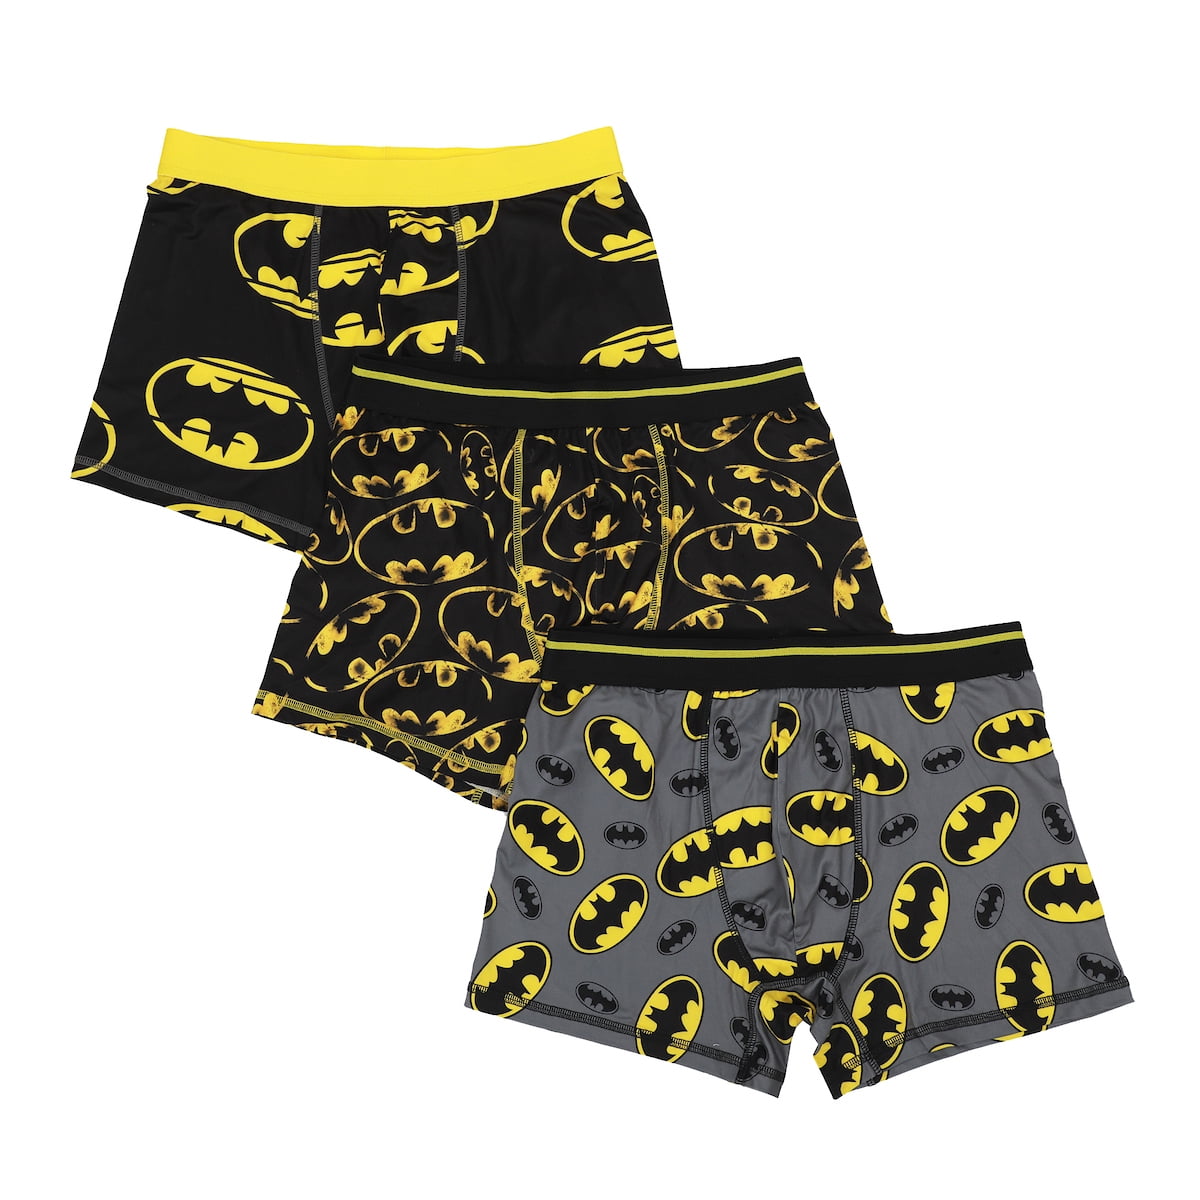 Men's Adult Batman Boxer Brief Underwear 3-Pack - Gotham's Finest  Comfort-XXL 